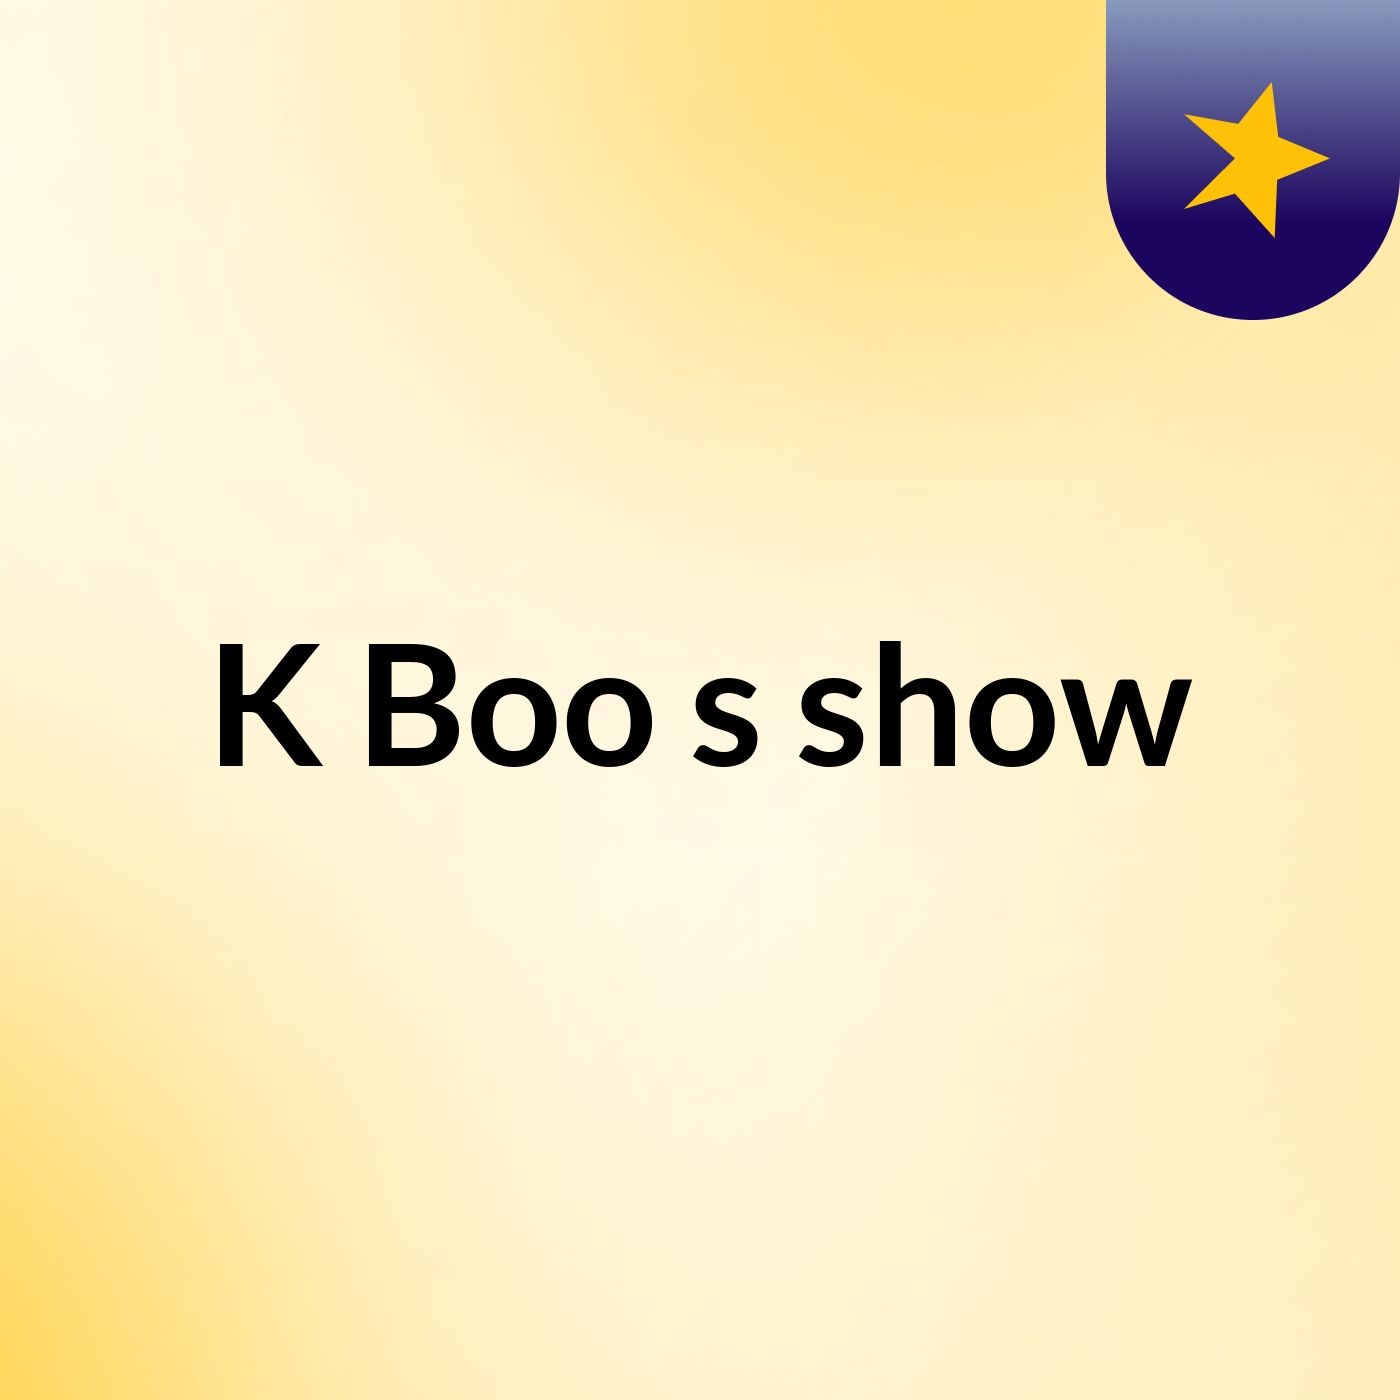 K Boo's show